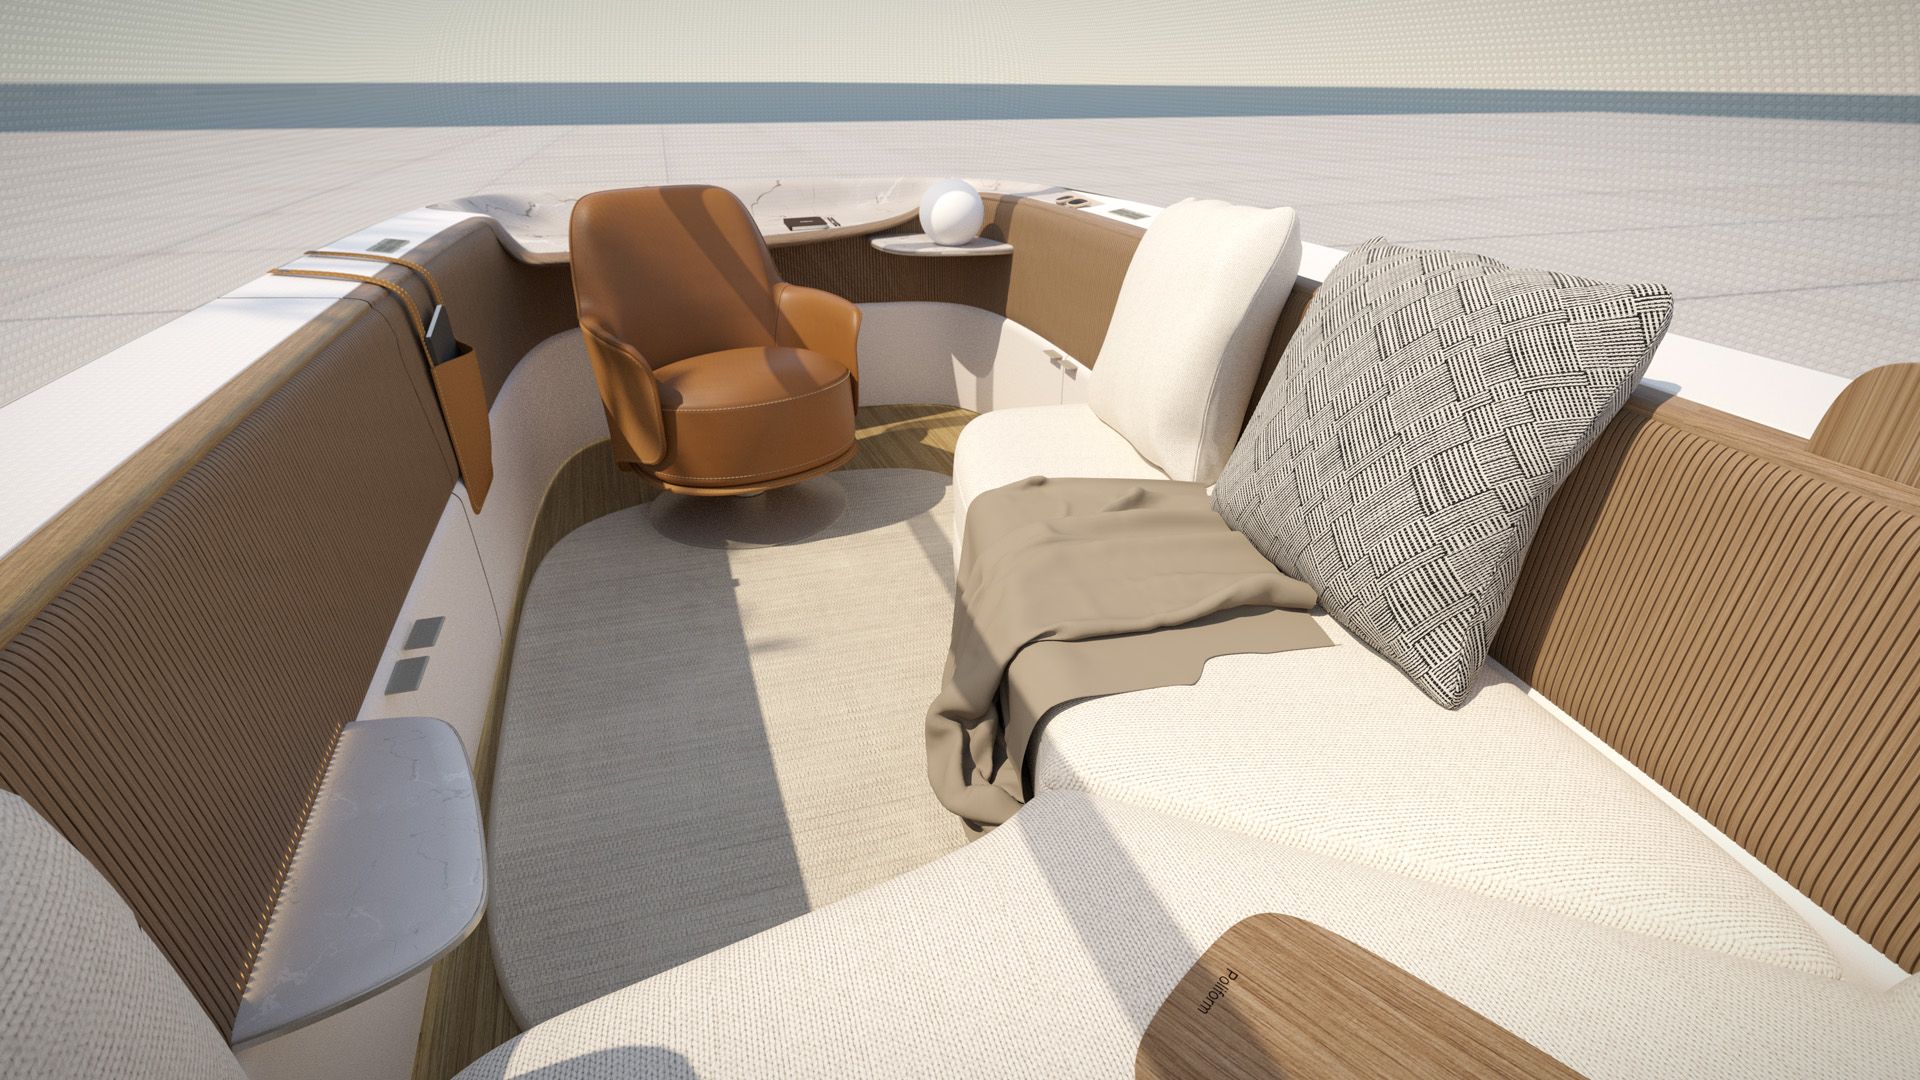 Le design intérieur par Poliform pour l'Audi urbansphere concept offre un habitacle confortable avec beaucoup de coussins et un fauteuil.